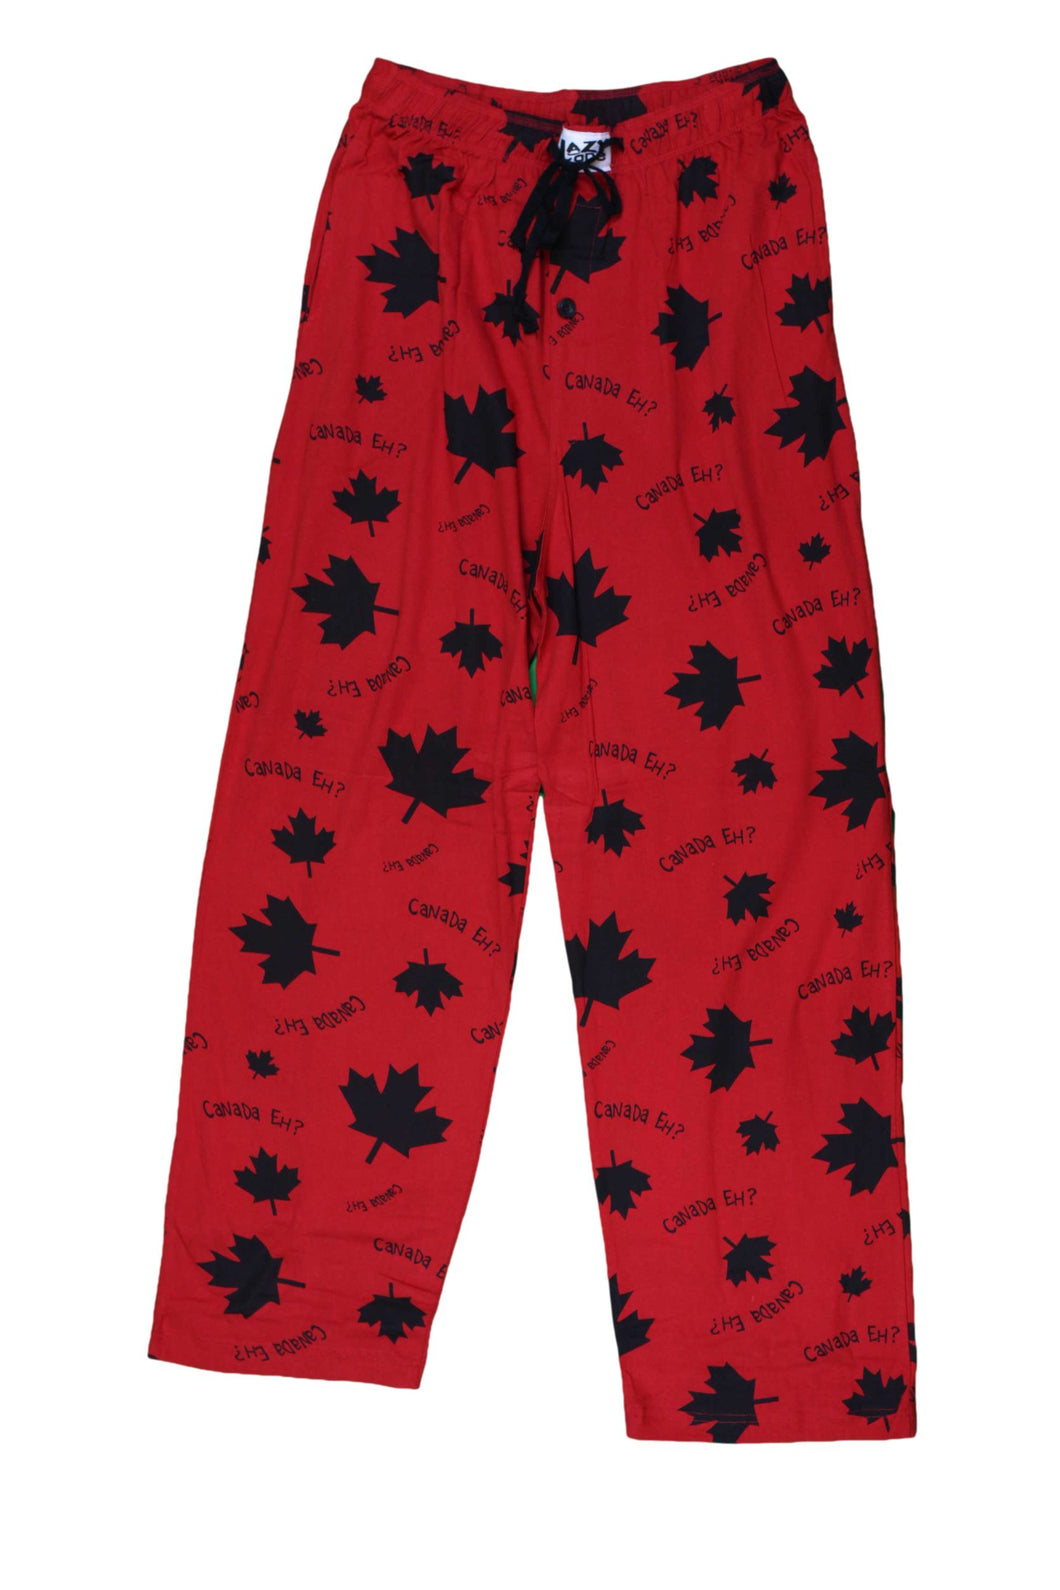 Canada Eh? Red Men's PJ Pants